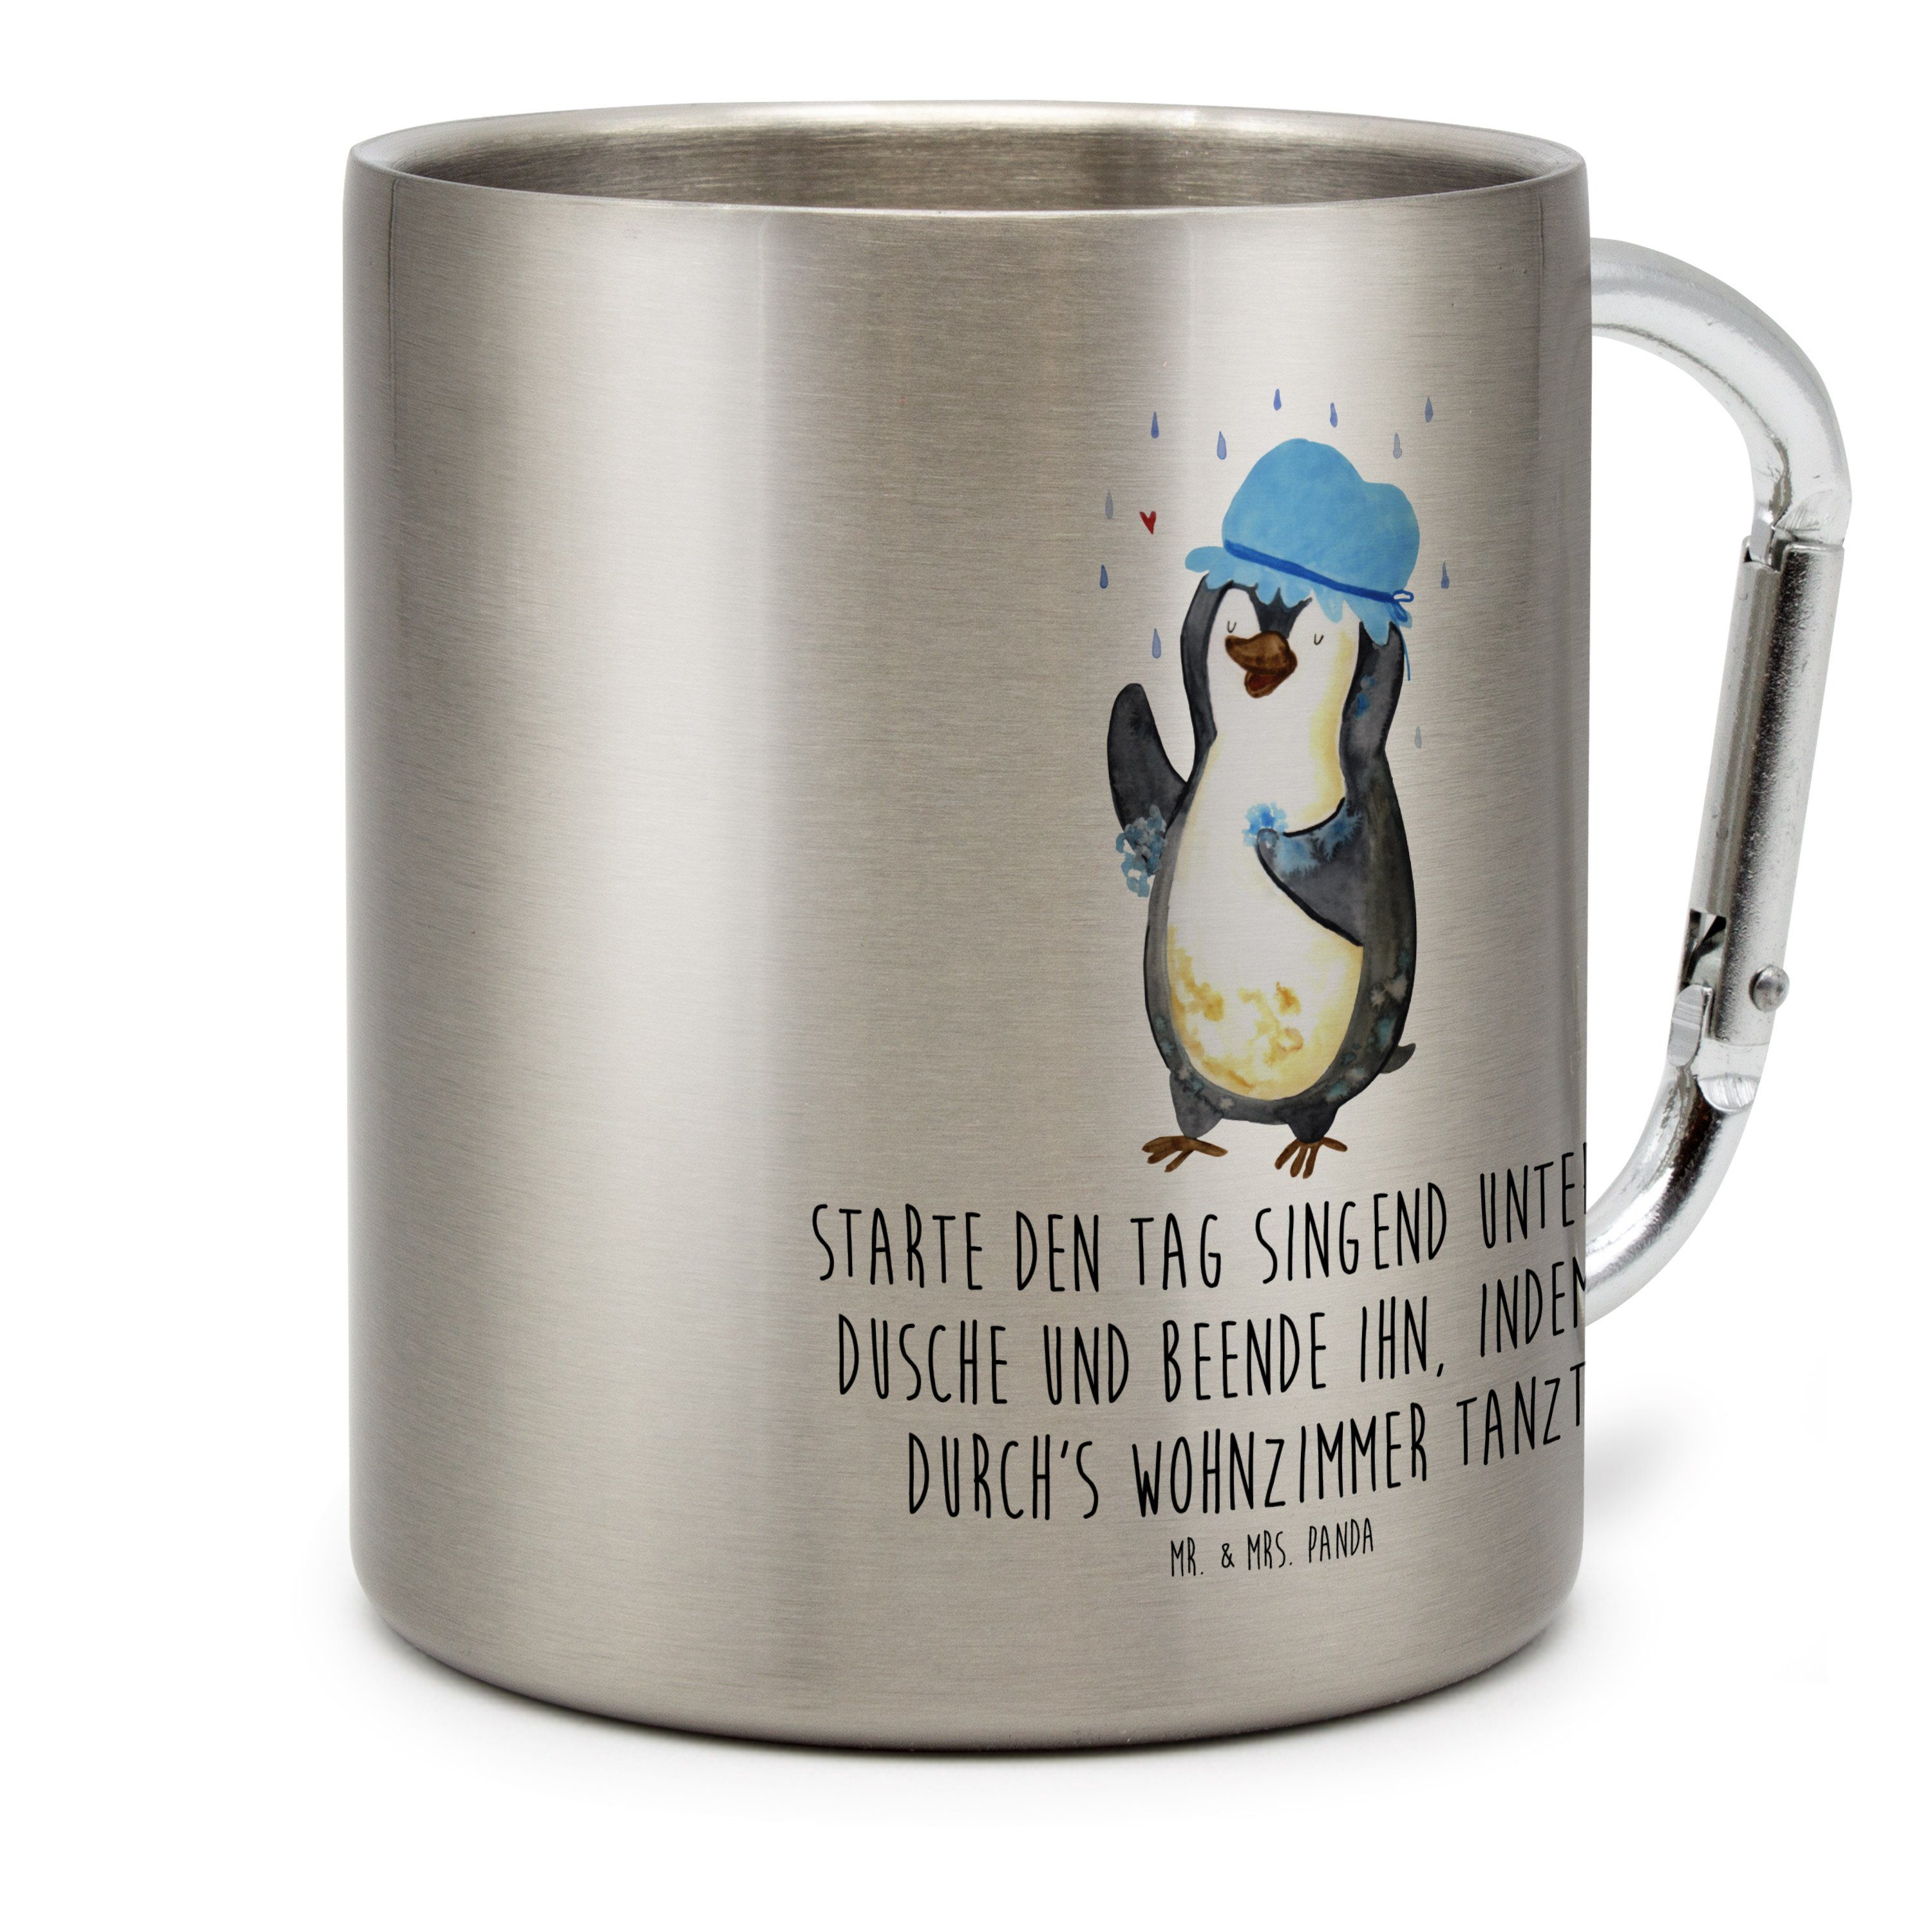 Mr. & Mrs. Panda Tasse Pinguin duscht - Transparent - Geschenk, duschen, Lebensmotto, baden, Edelstahl